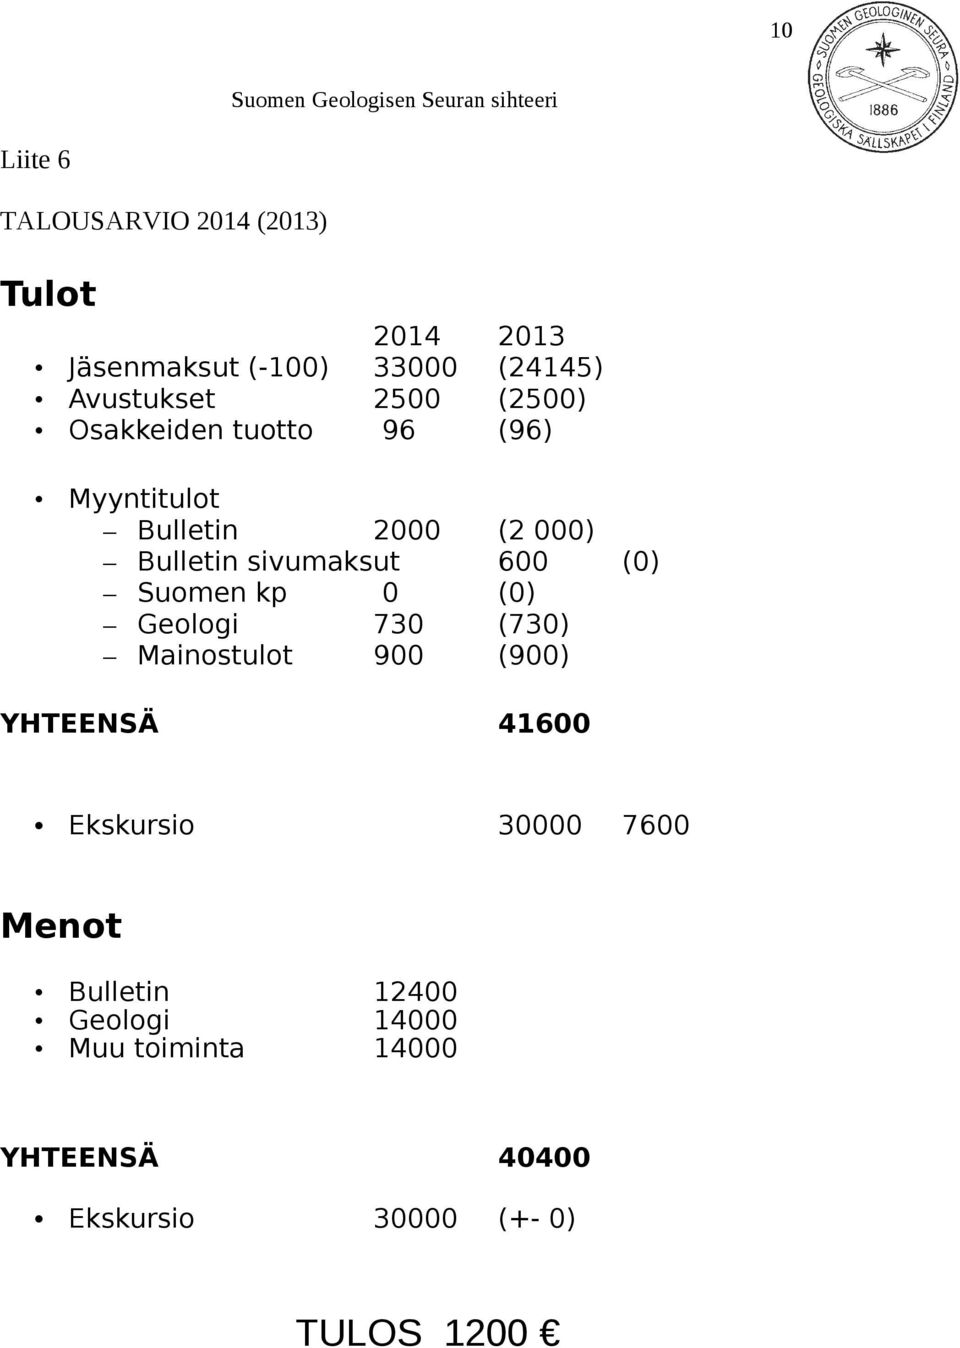 sivumaksut 600 (0) Suomen kp 0 (0) Geologi 730 (730) Mainostulot 900 (900) YHTEENSÄ 41600 Ekskursio 30000